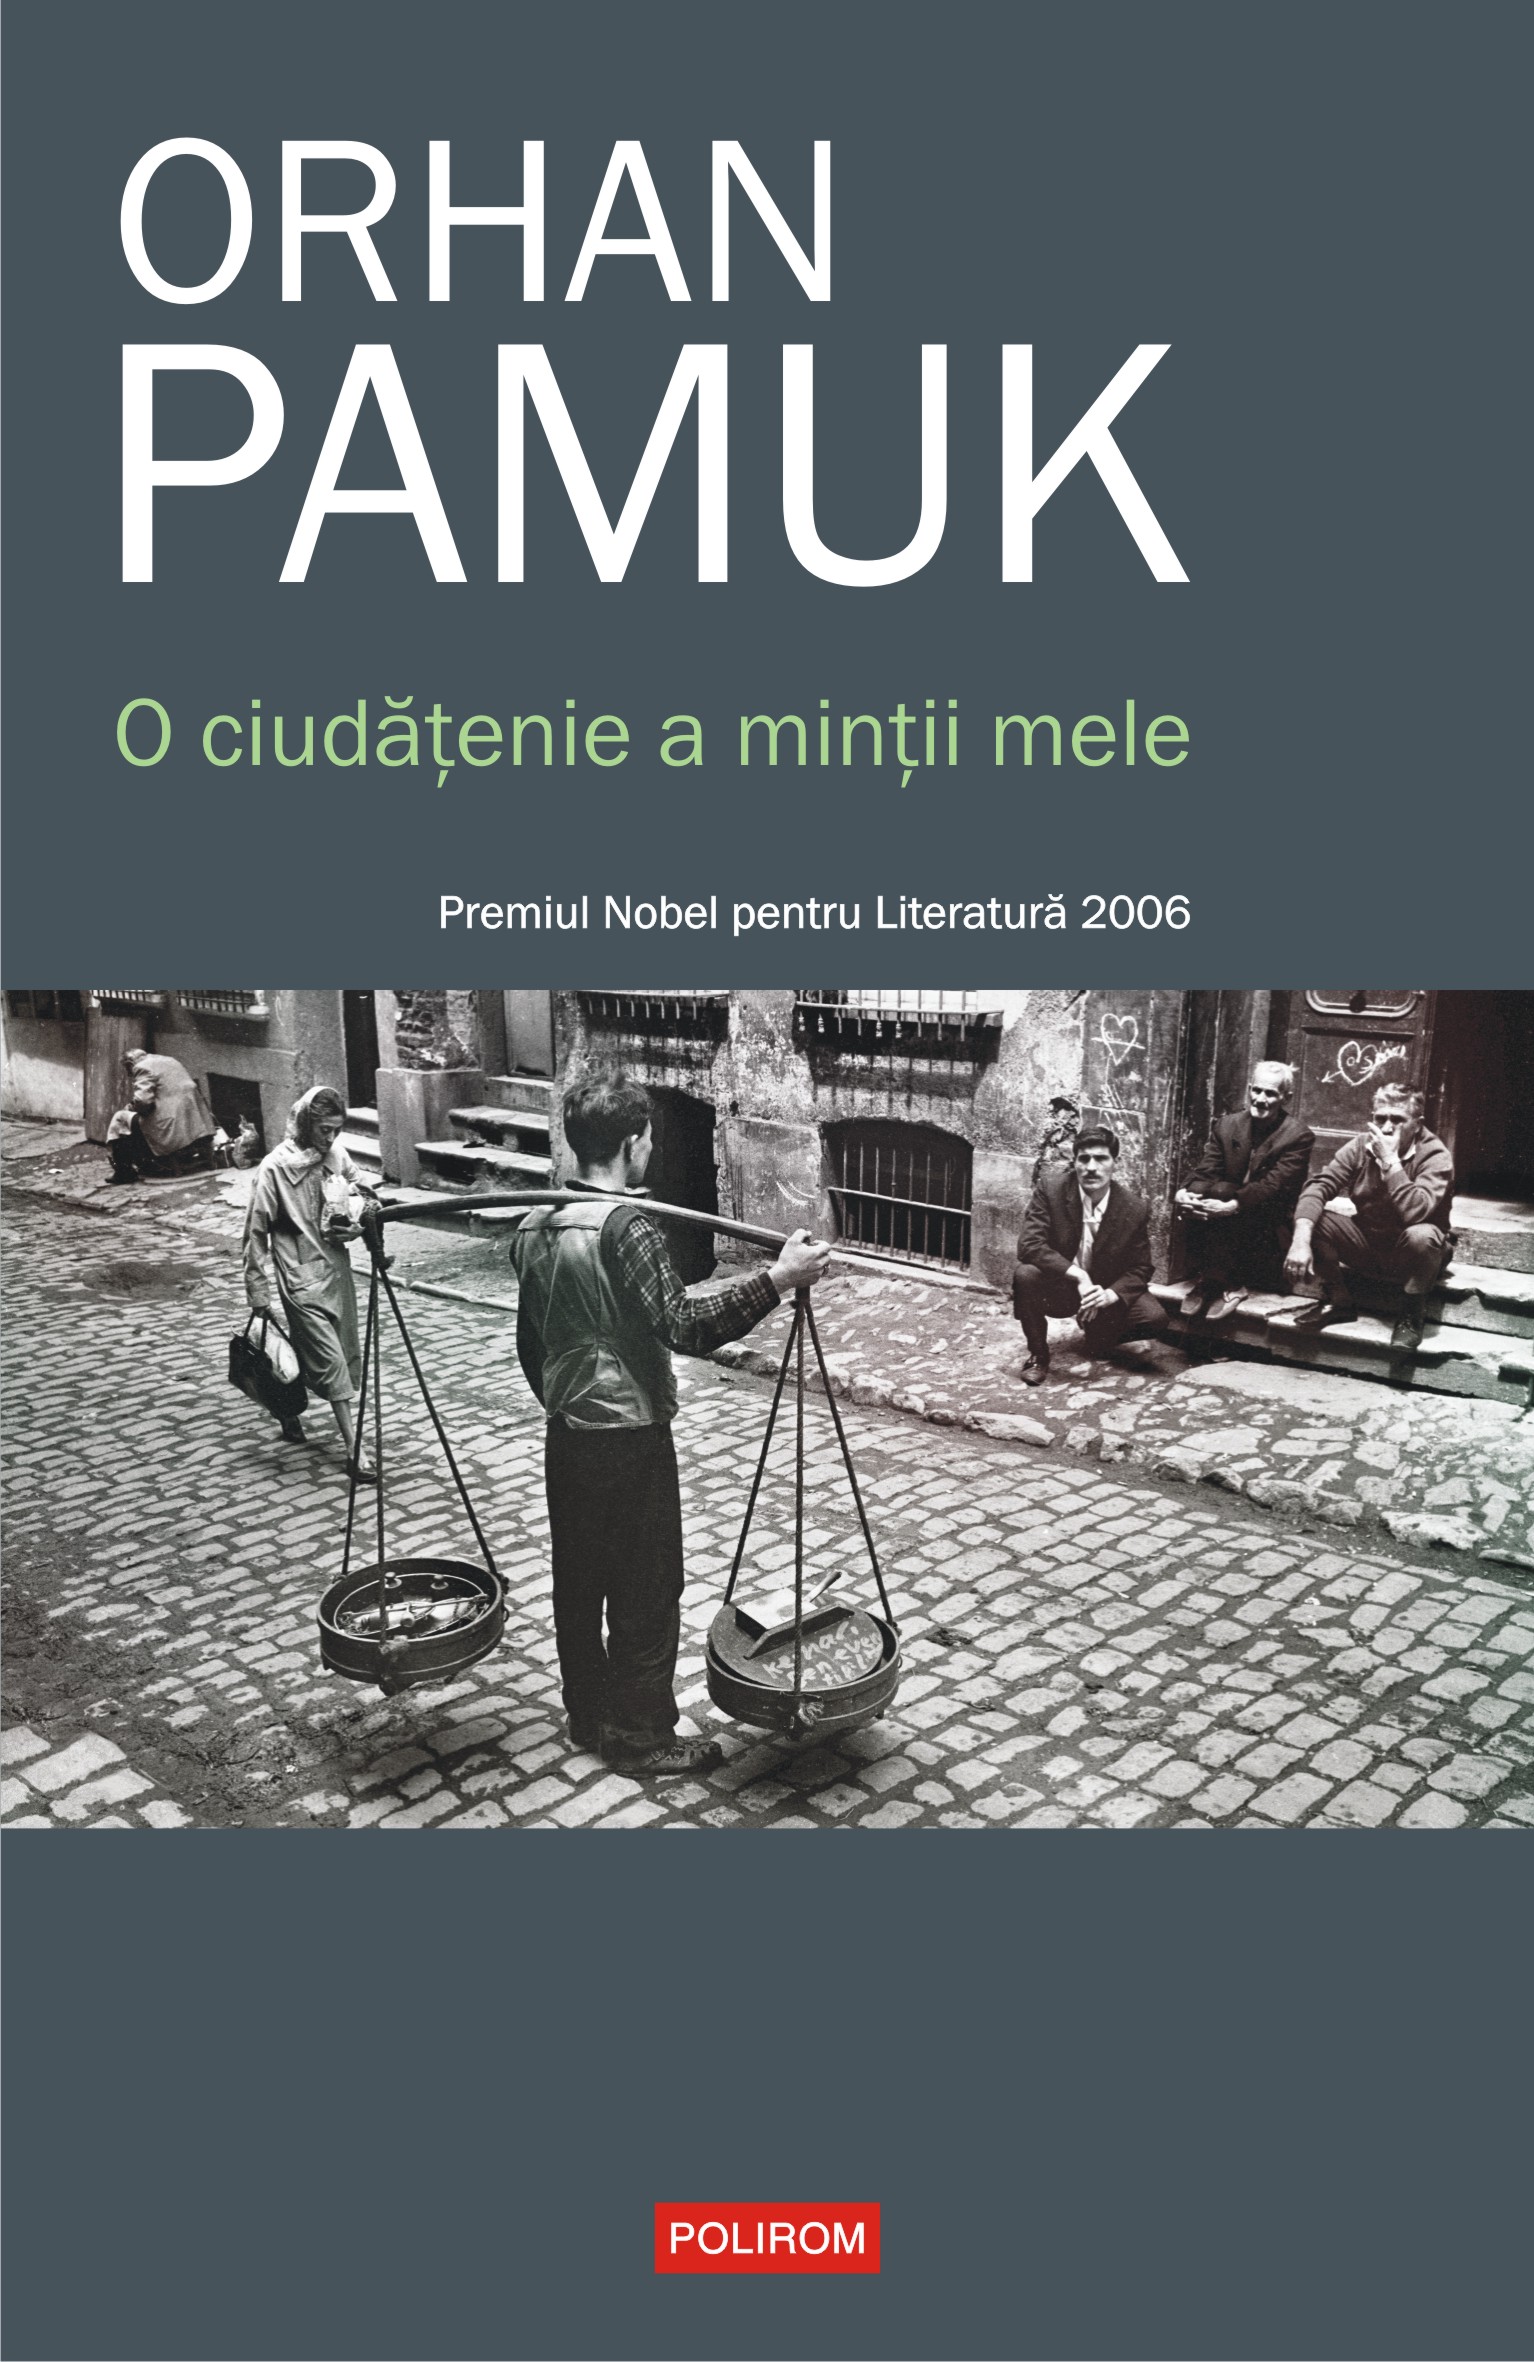 eBook O ciudatenie a mintii mele - Orhan Pamuk